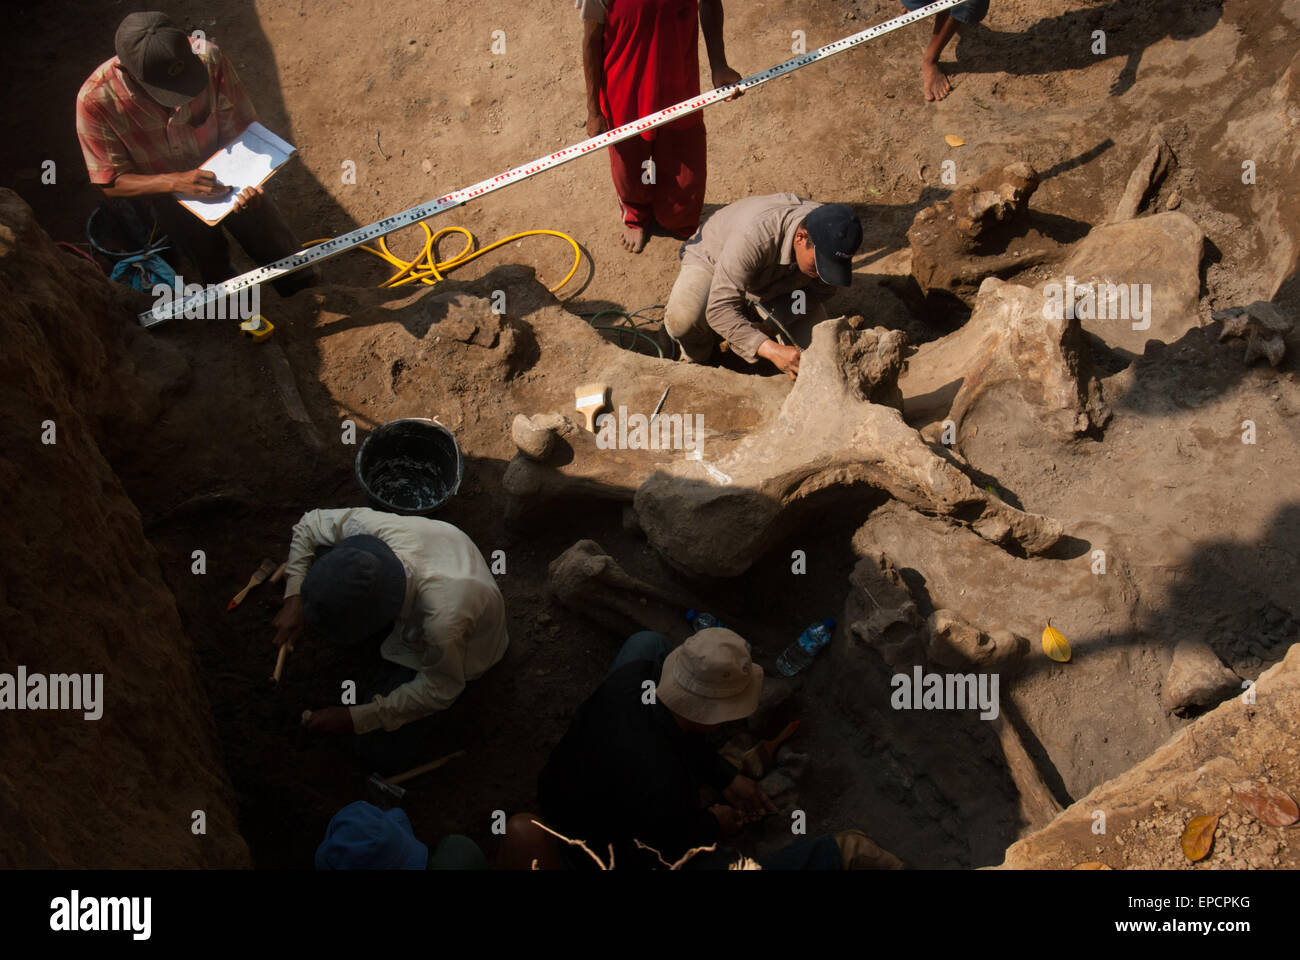 Los paleontólogos y aldeanos están trabajando en la excavación de huesos fosilizados de una especie de elefante extinto, Elephas hysudrindicus, en Indonesia. Foto de stock